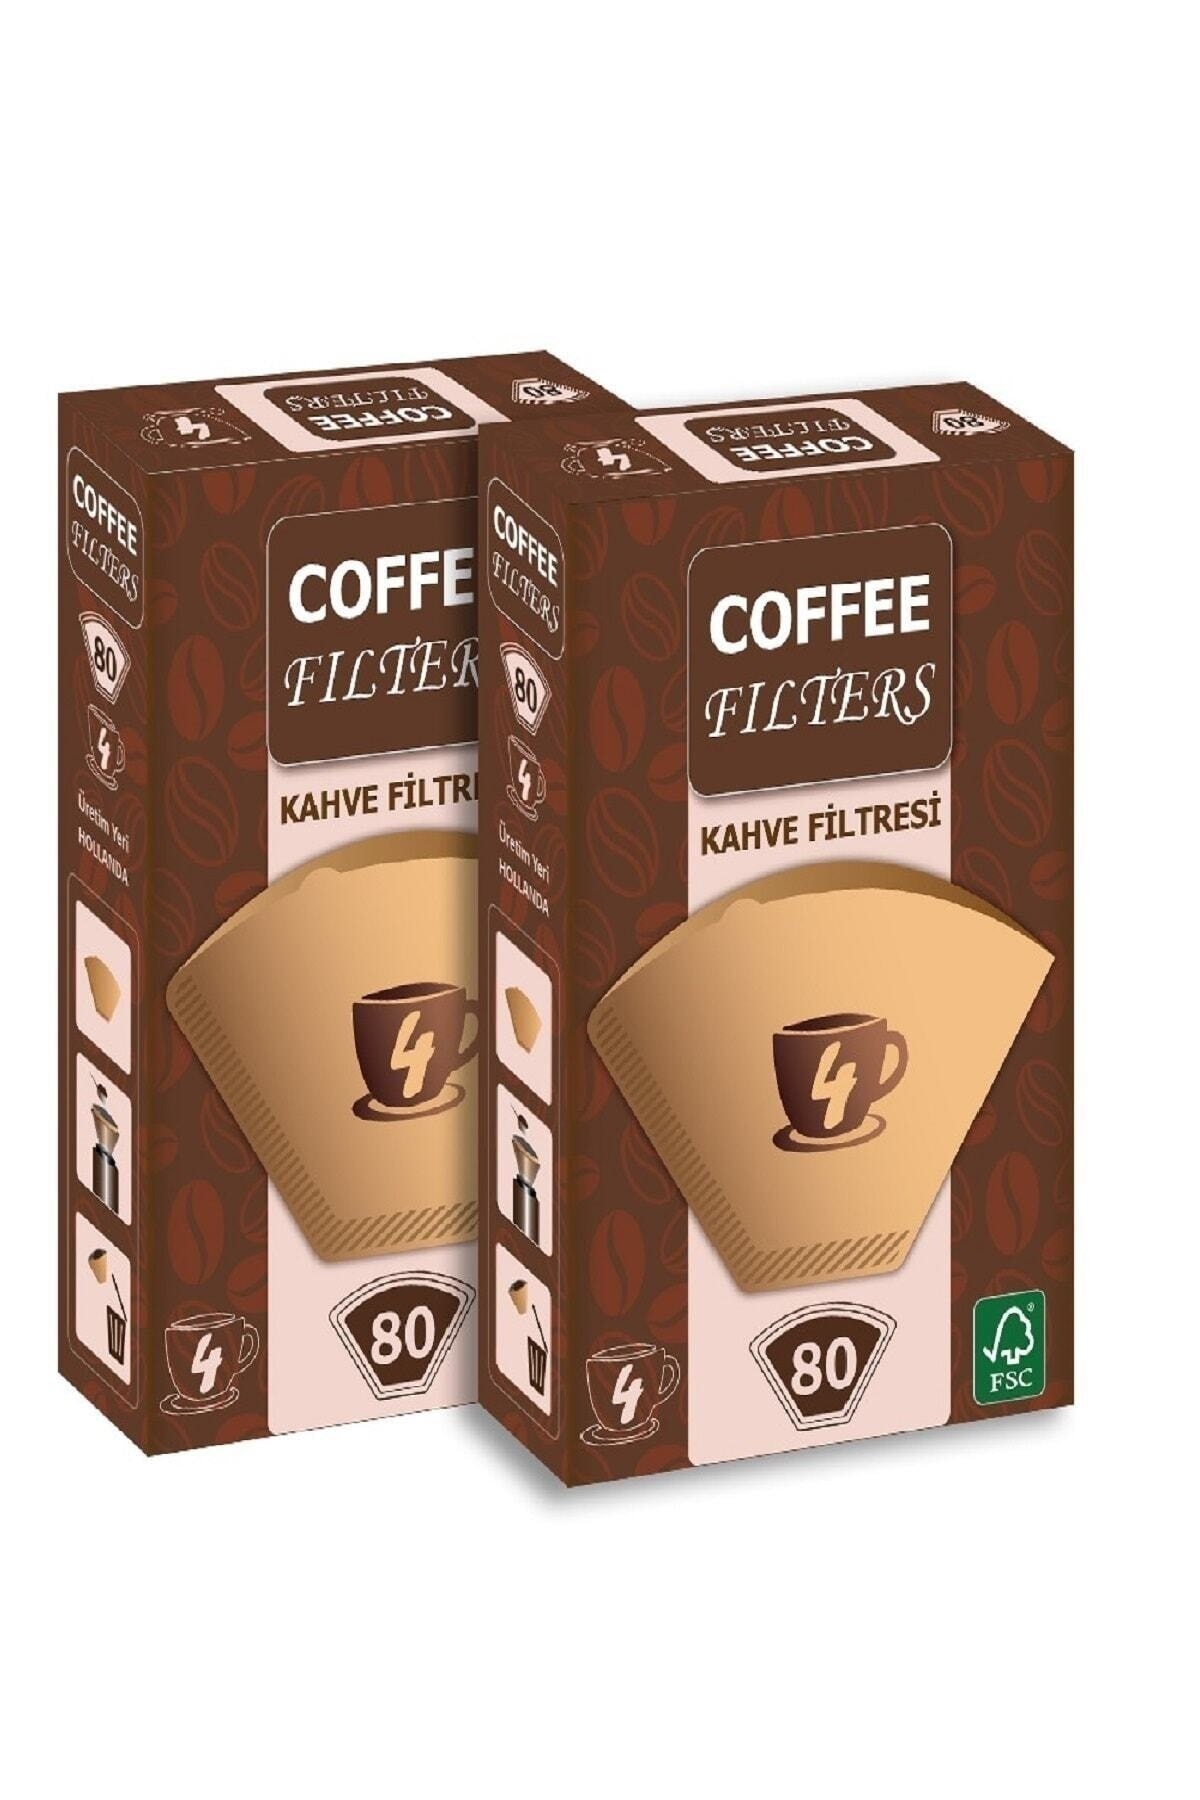 Coffee Filters Filtre Kahve Kağıdı 1 X 4 Avantajlı Paket 2 Adet 80'li